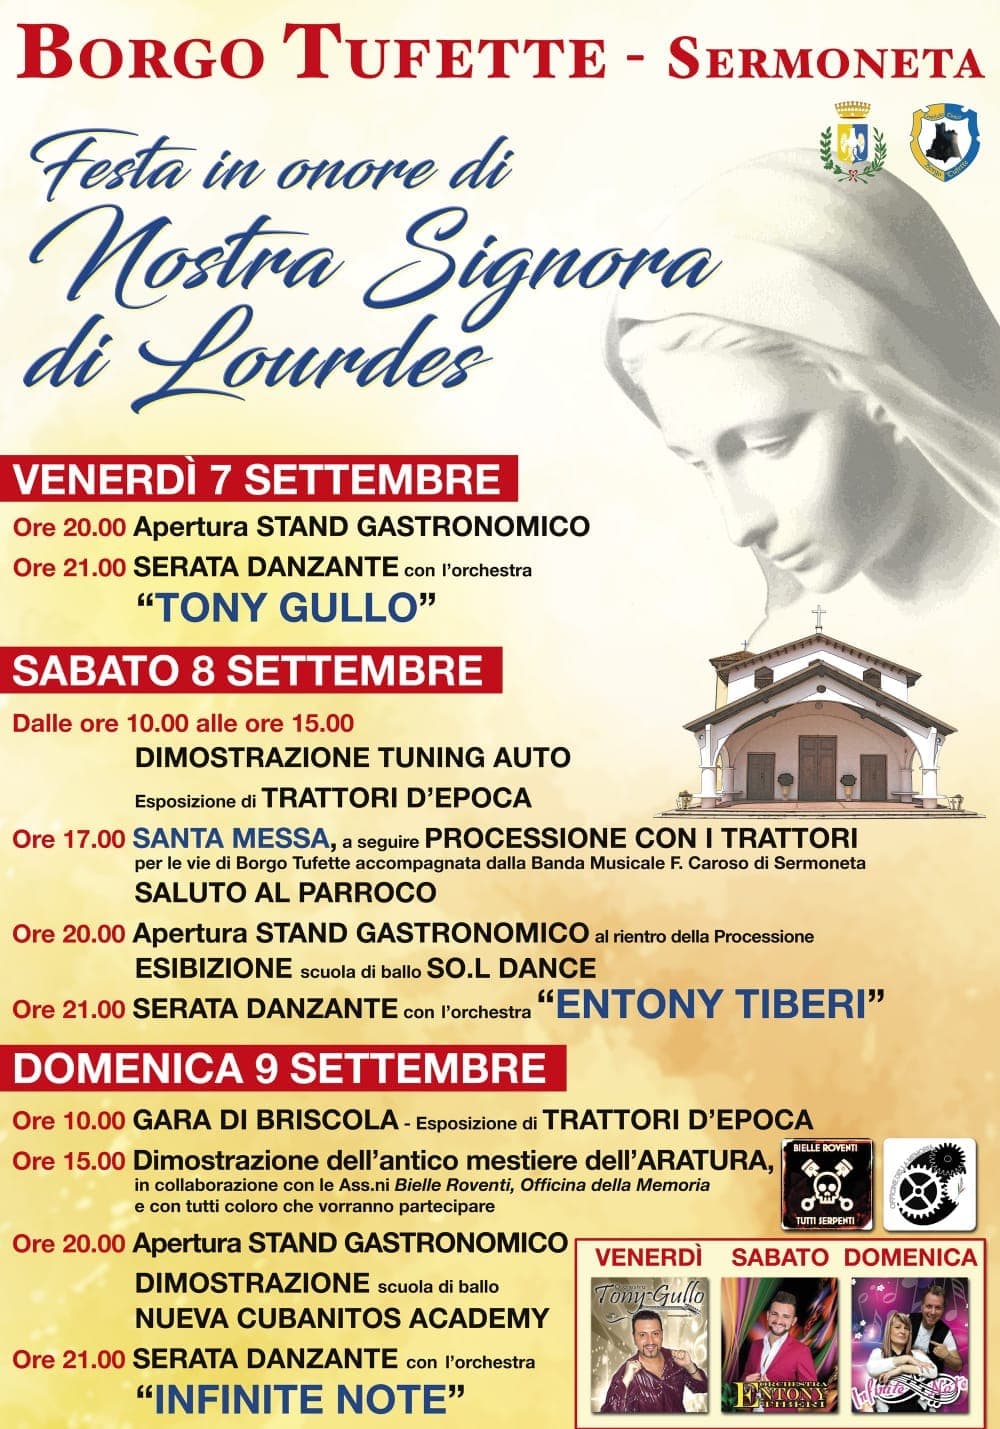 Tufette in festa per Nostra Signora di Lourdes dal 7 al 9 settembre